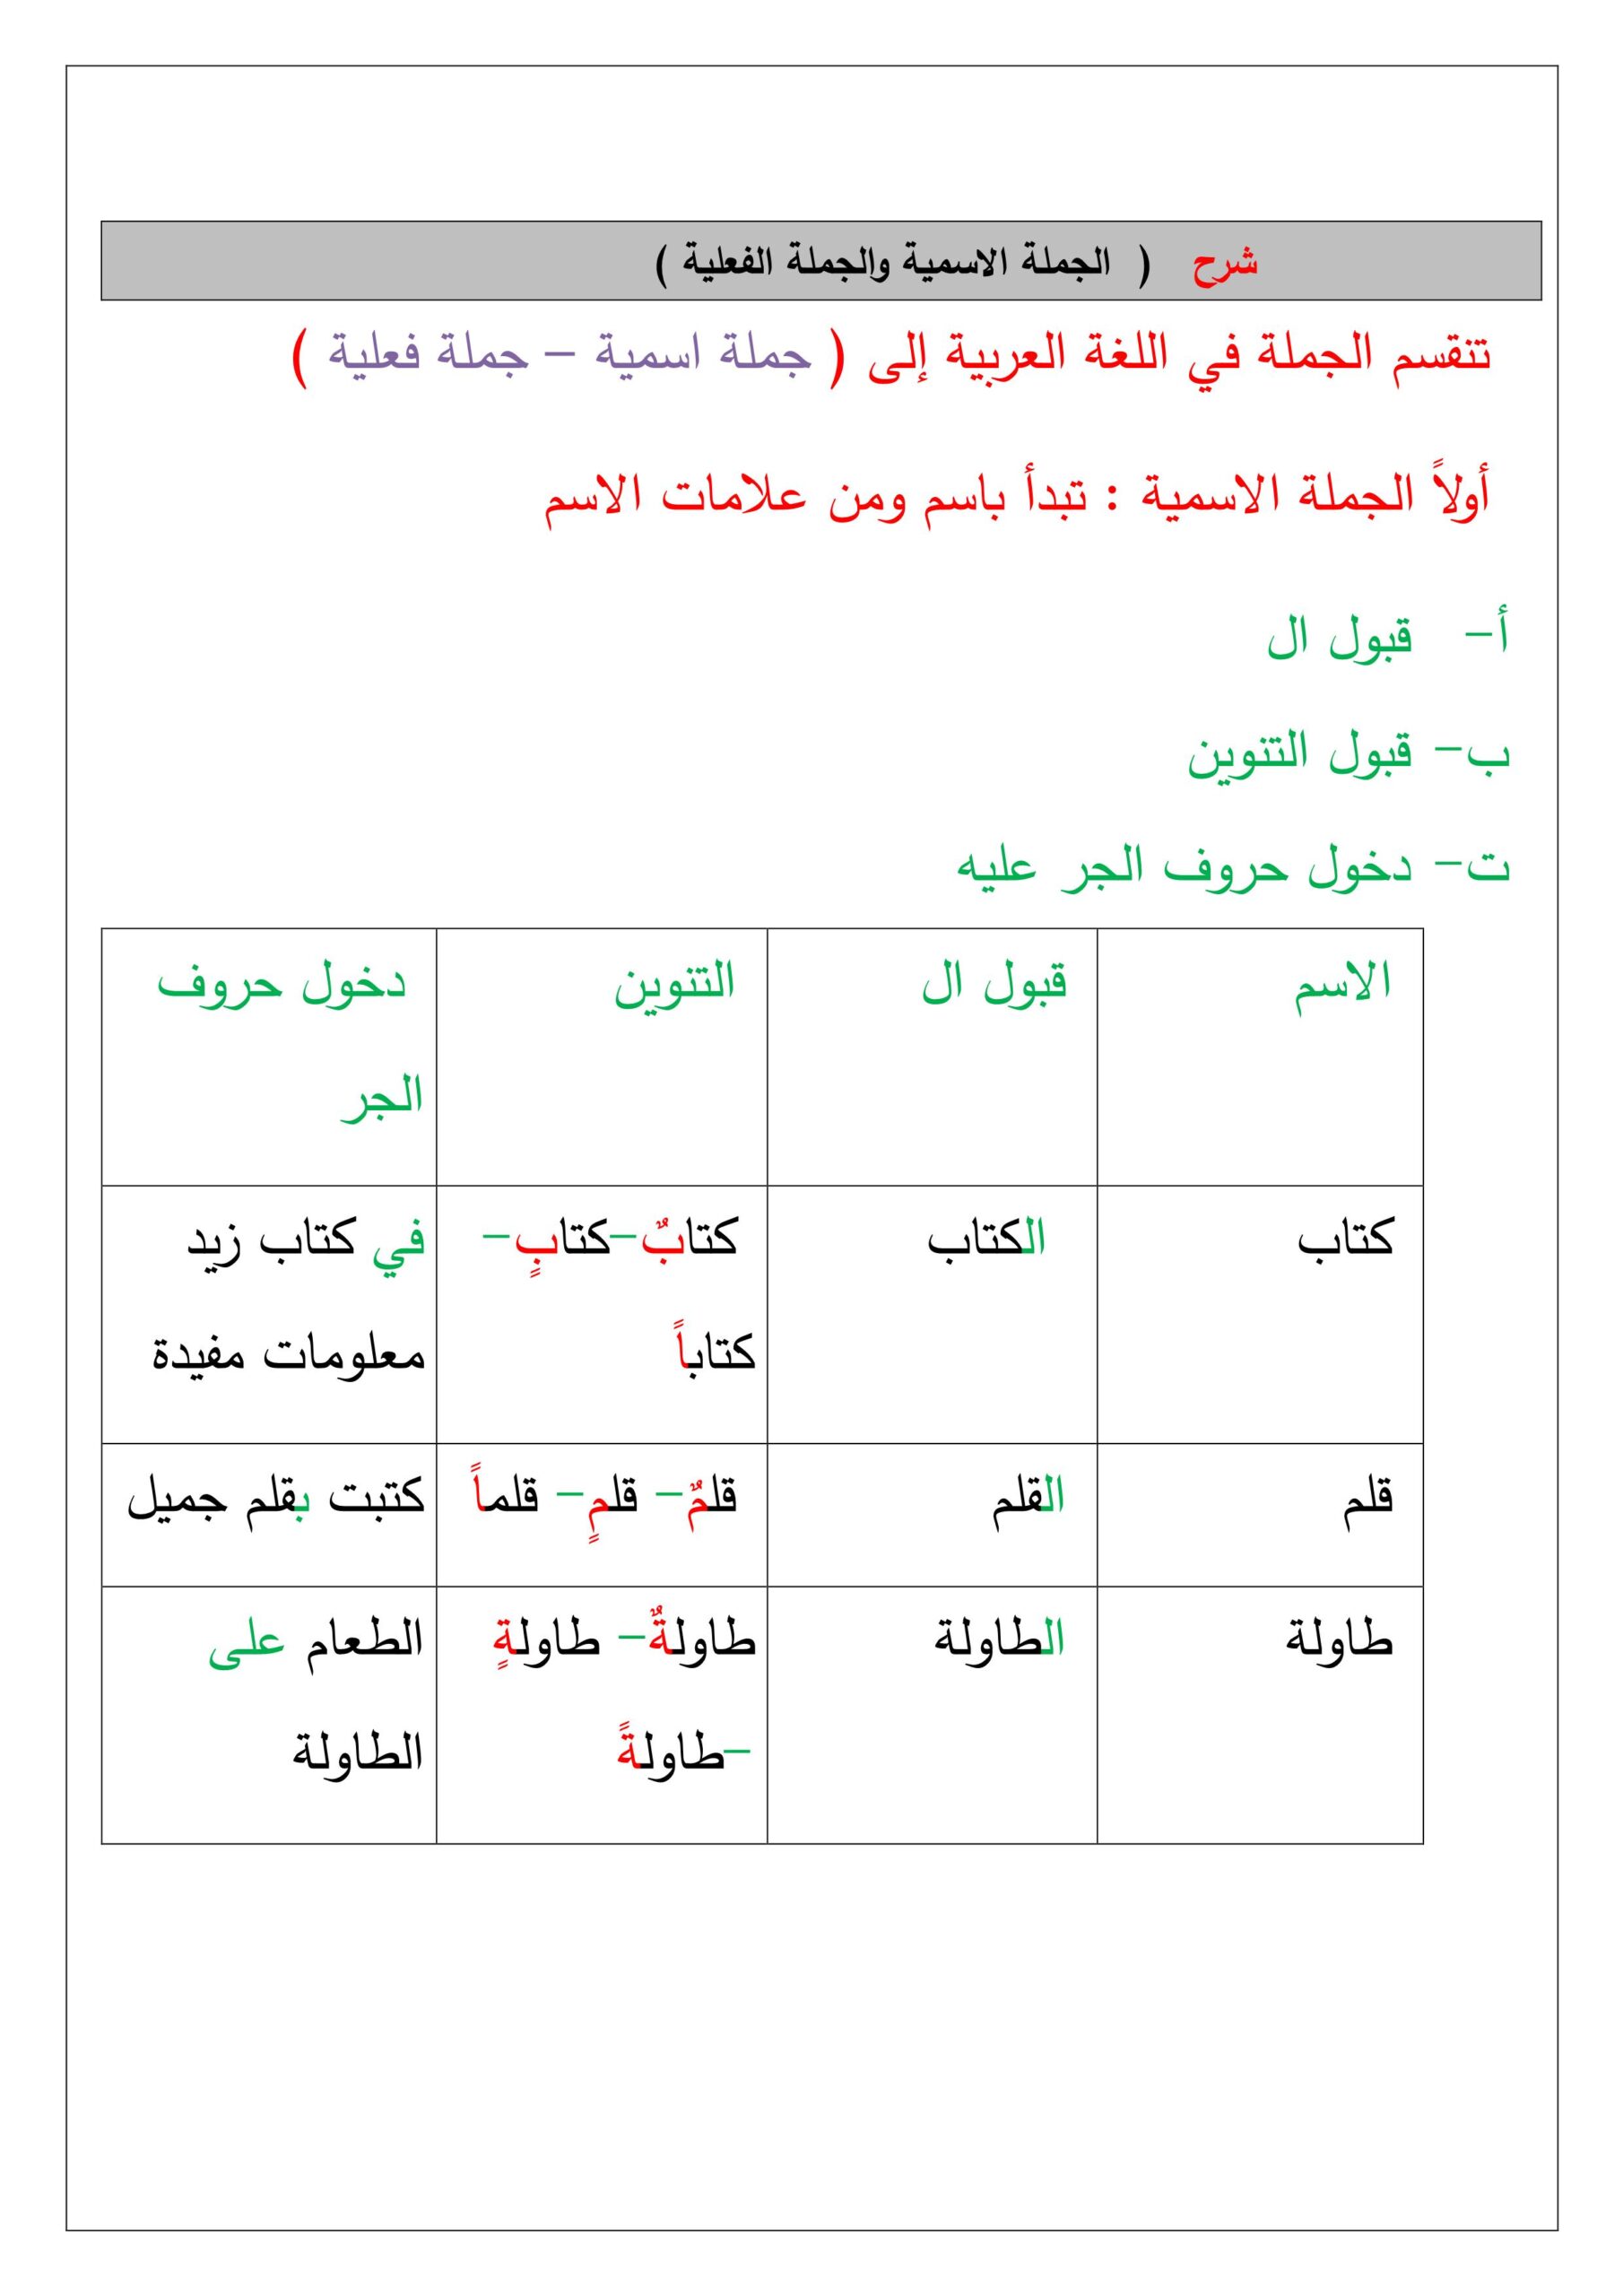 شرح الجملة الاسمية والجملة الفعلية اللغة العربية الصف الخامس 